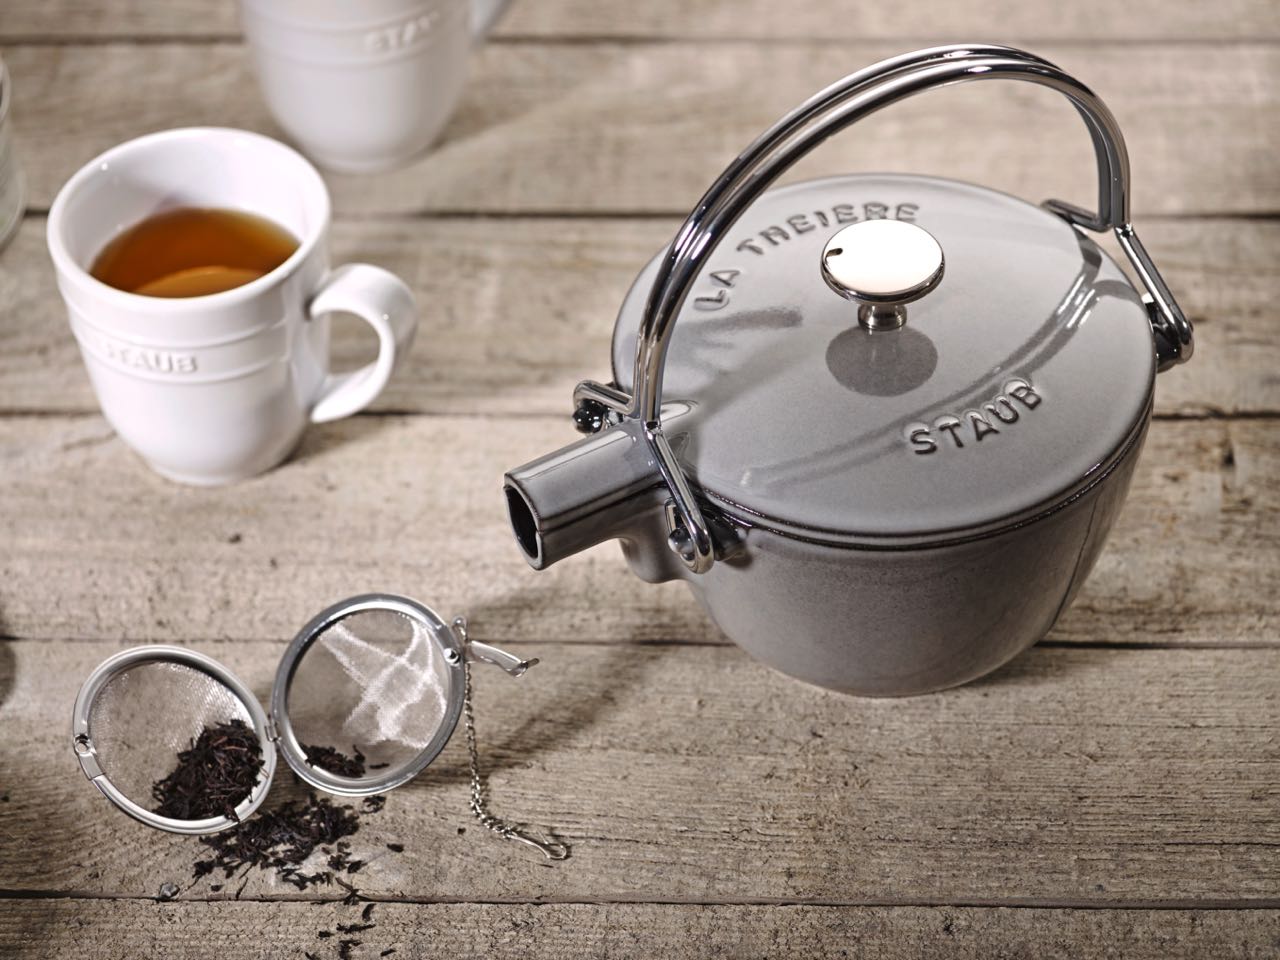 In der stylishen Kanne aus Gusseisen in Graphitgrau bleibt der Tee lange heiß. Looser Tee schmeckt besonders gut und kann mit einem Sieb einfach in die Kanne gehangen werden oder gleich in die Tasse. Alles von Staub.